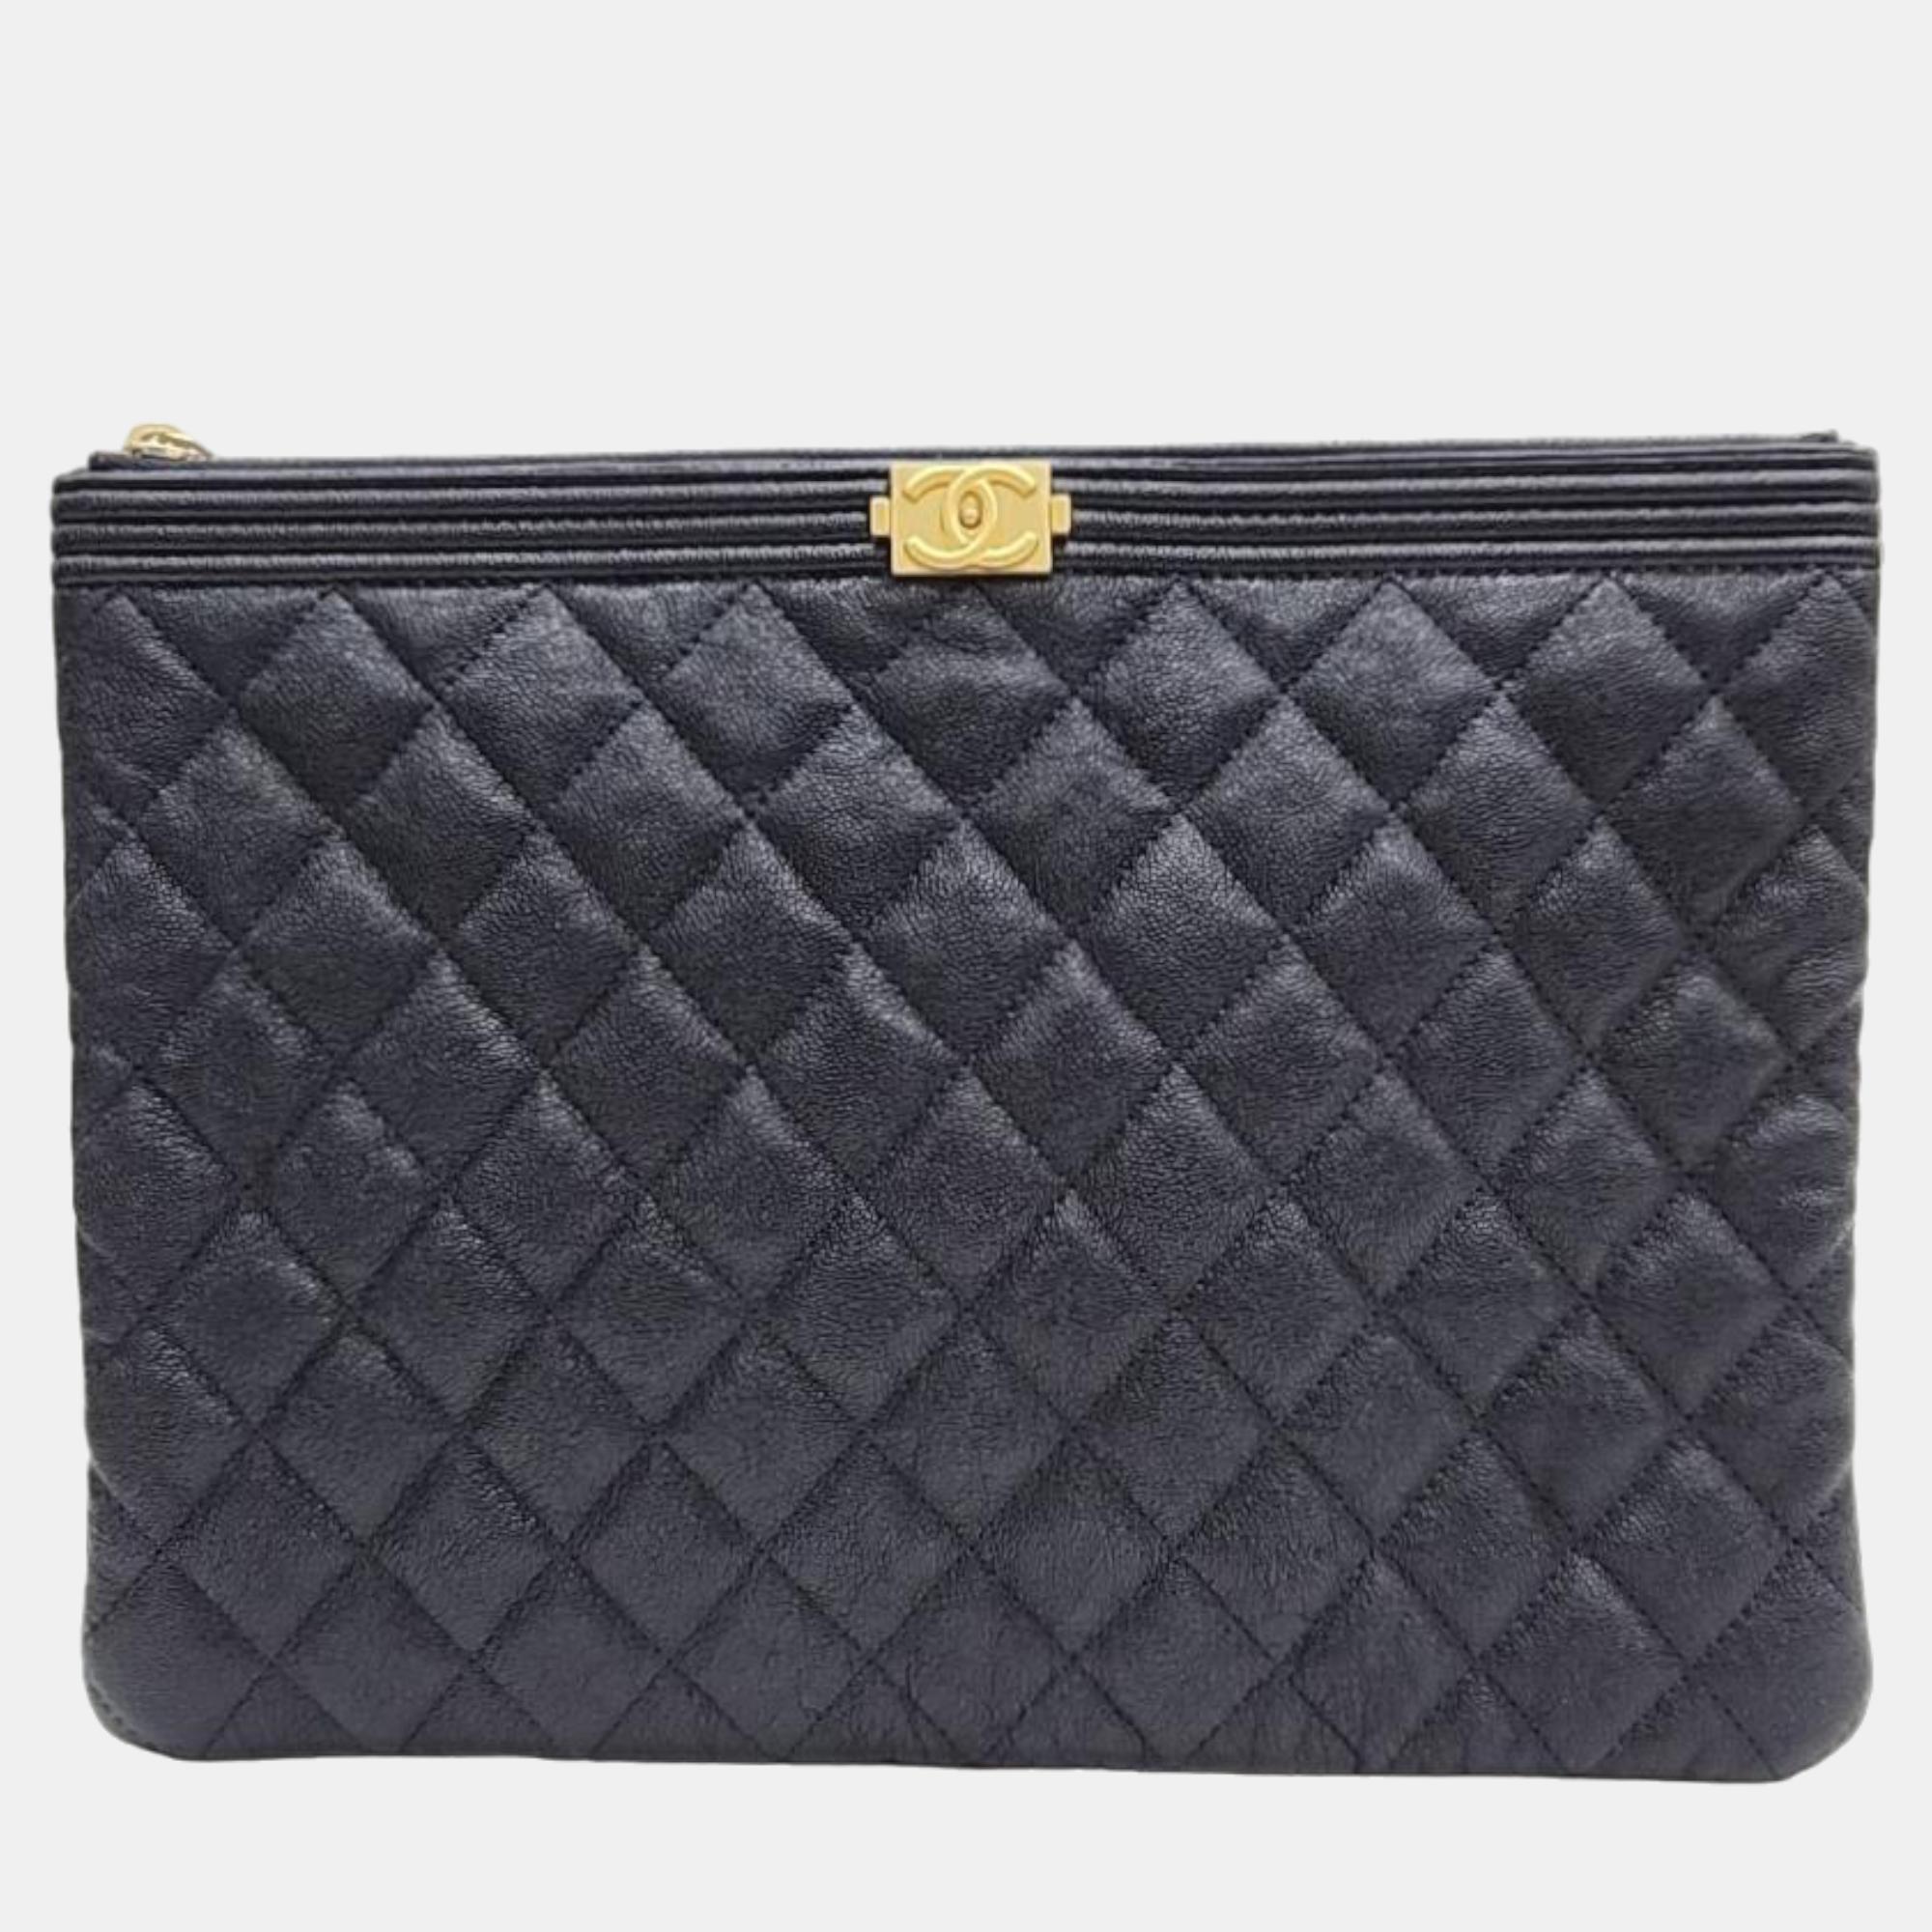 Chanel navy blue caviar leather o case medium boy clutch bag